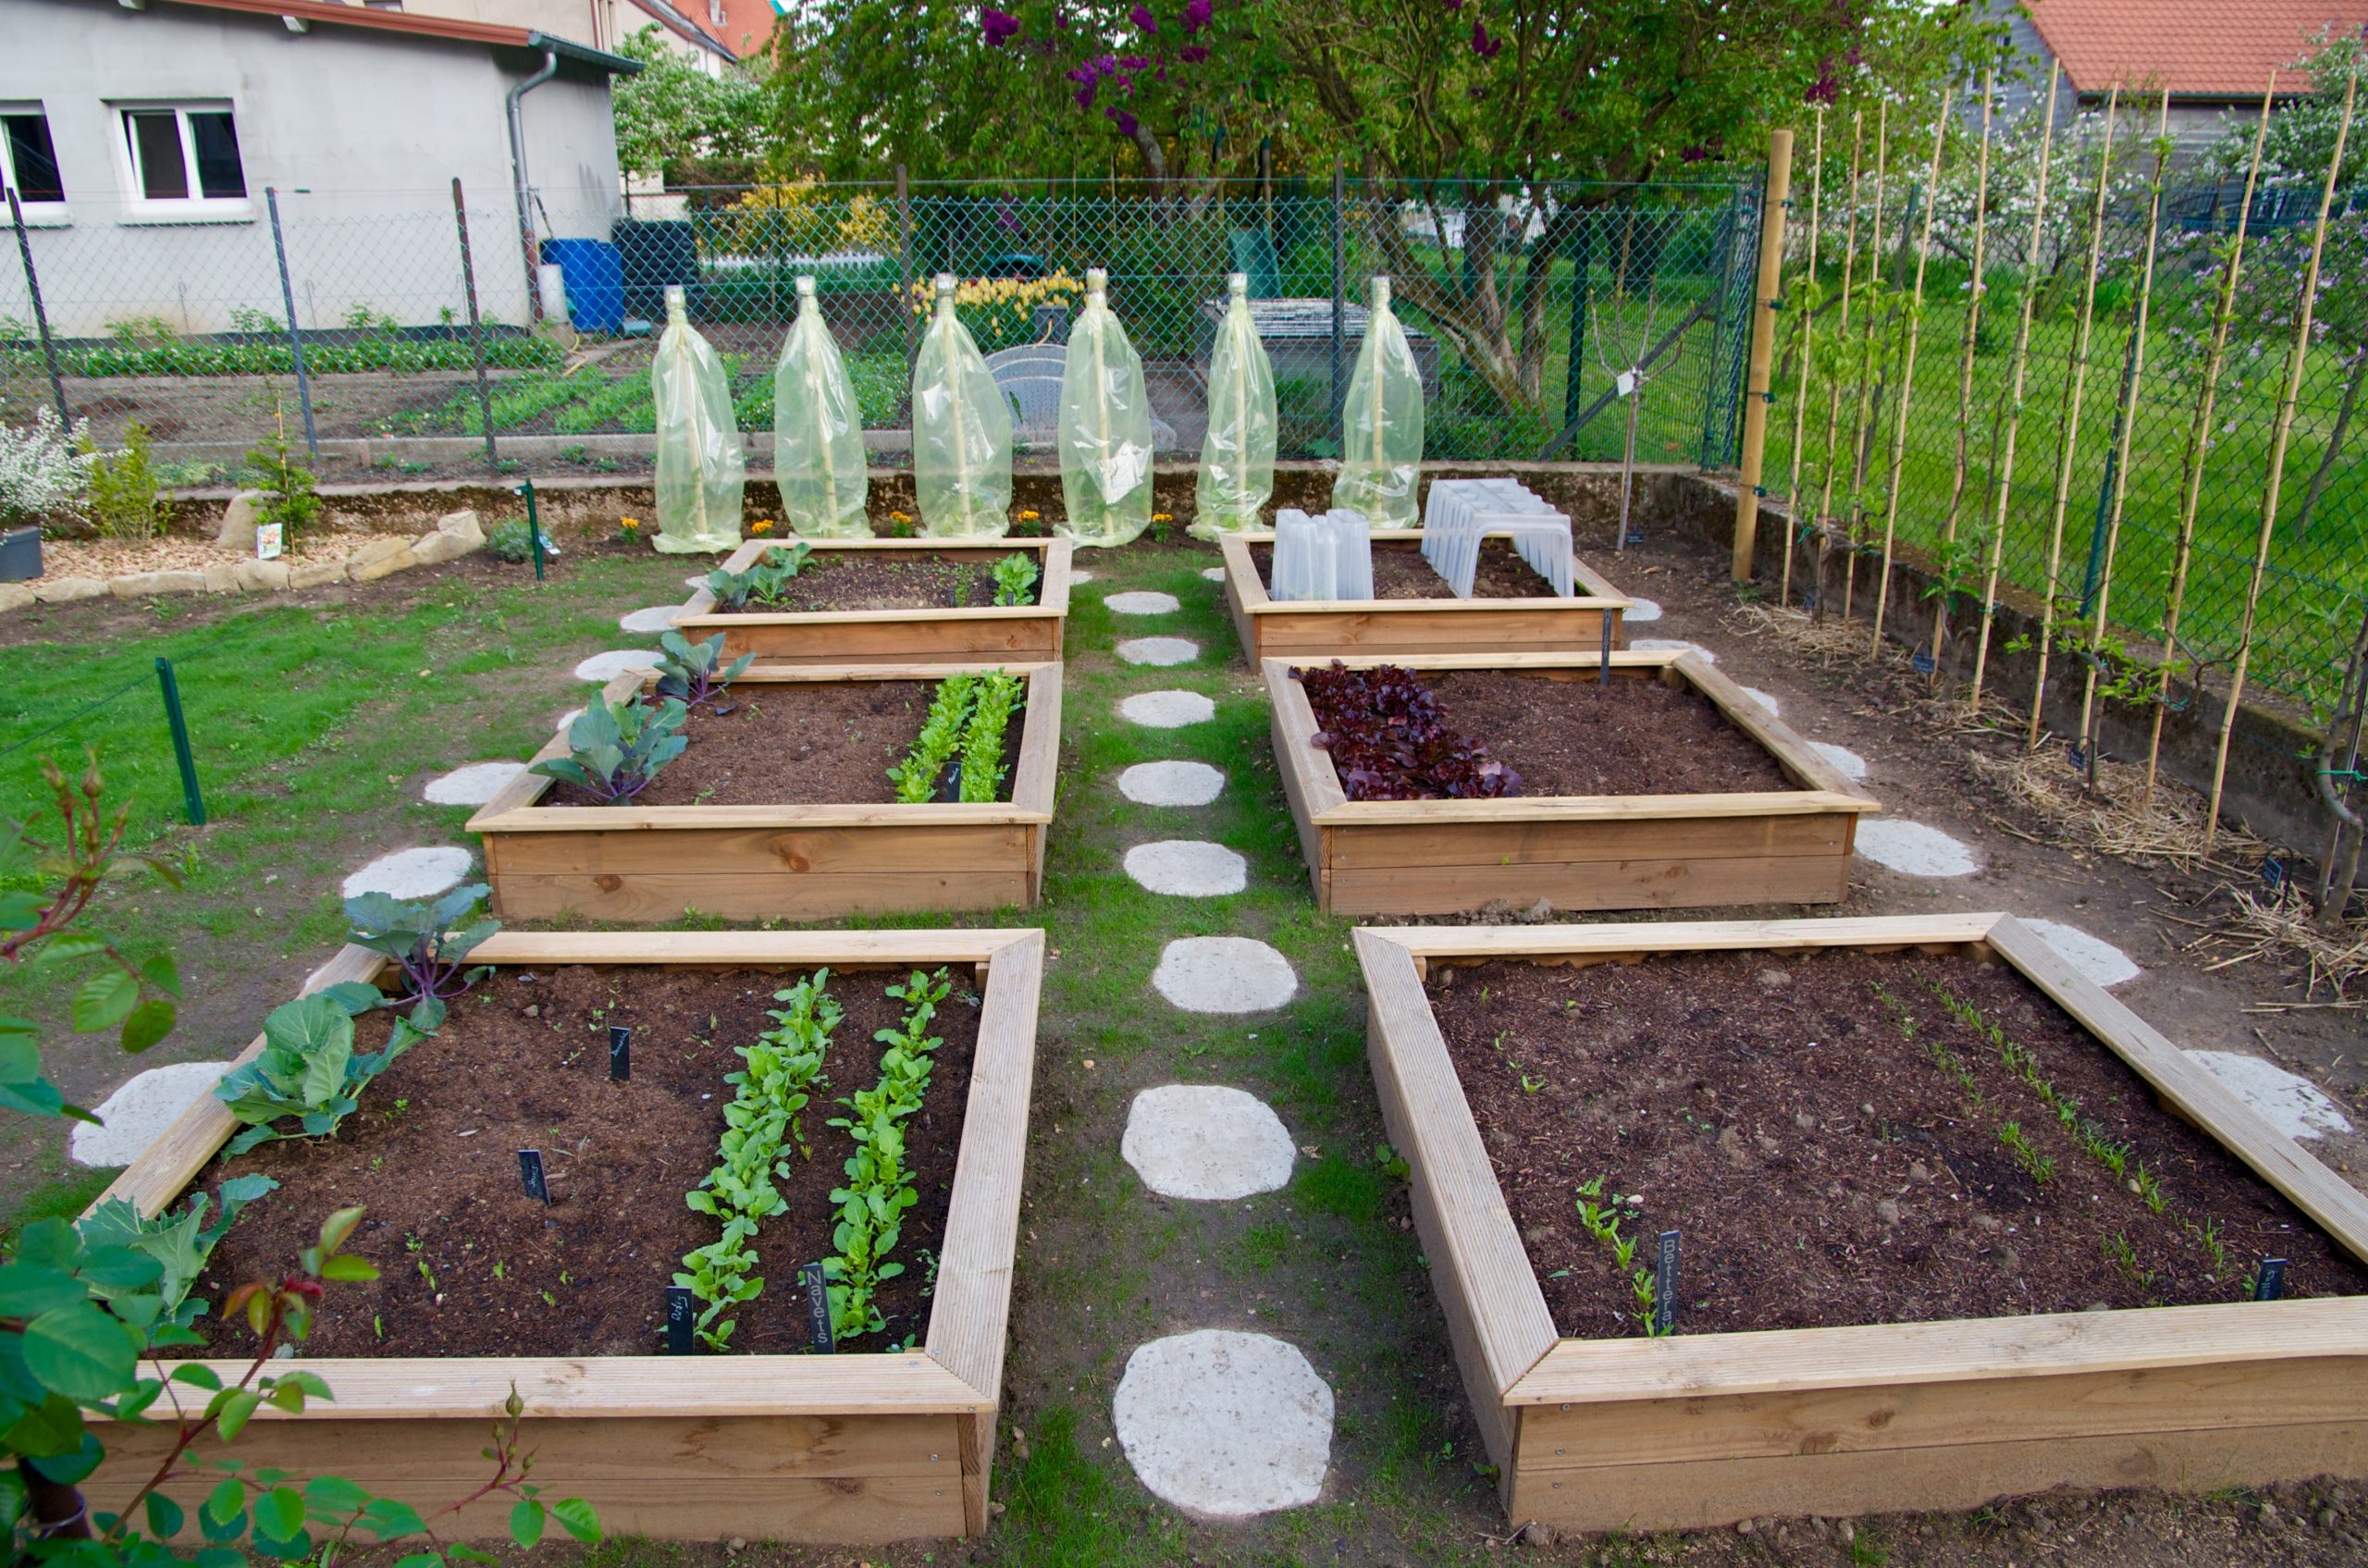 Le Top 5 Des Fruits Et Légumes À Cultiver Dans Son Jardin ... concernant Faire Un Petit Potager Dans Son Jardin